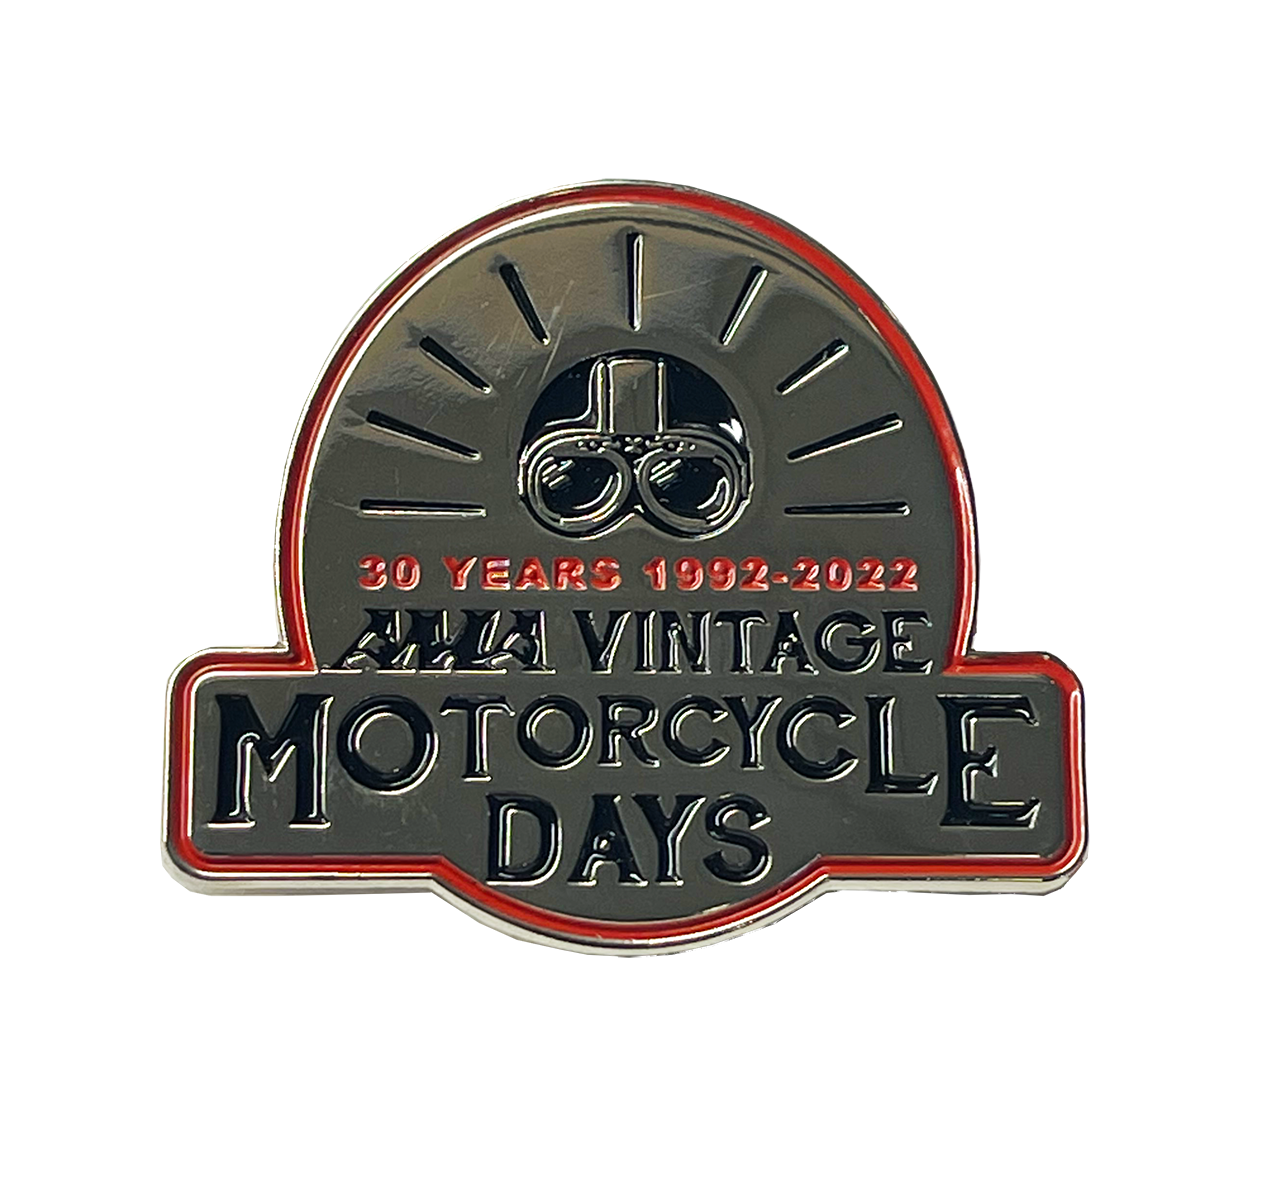 AMA Vintage Motorcycle Days Pin